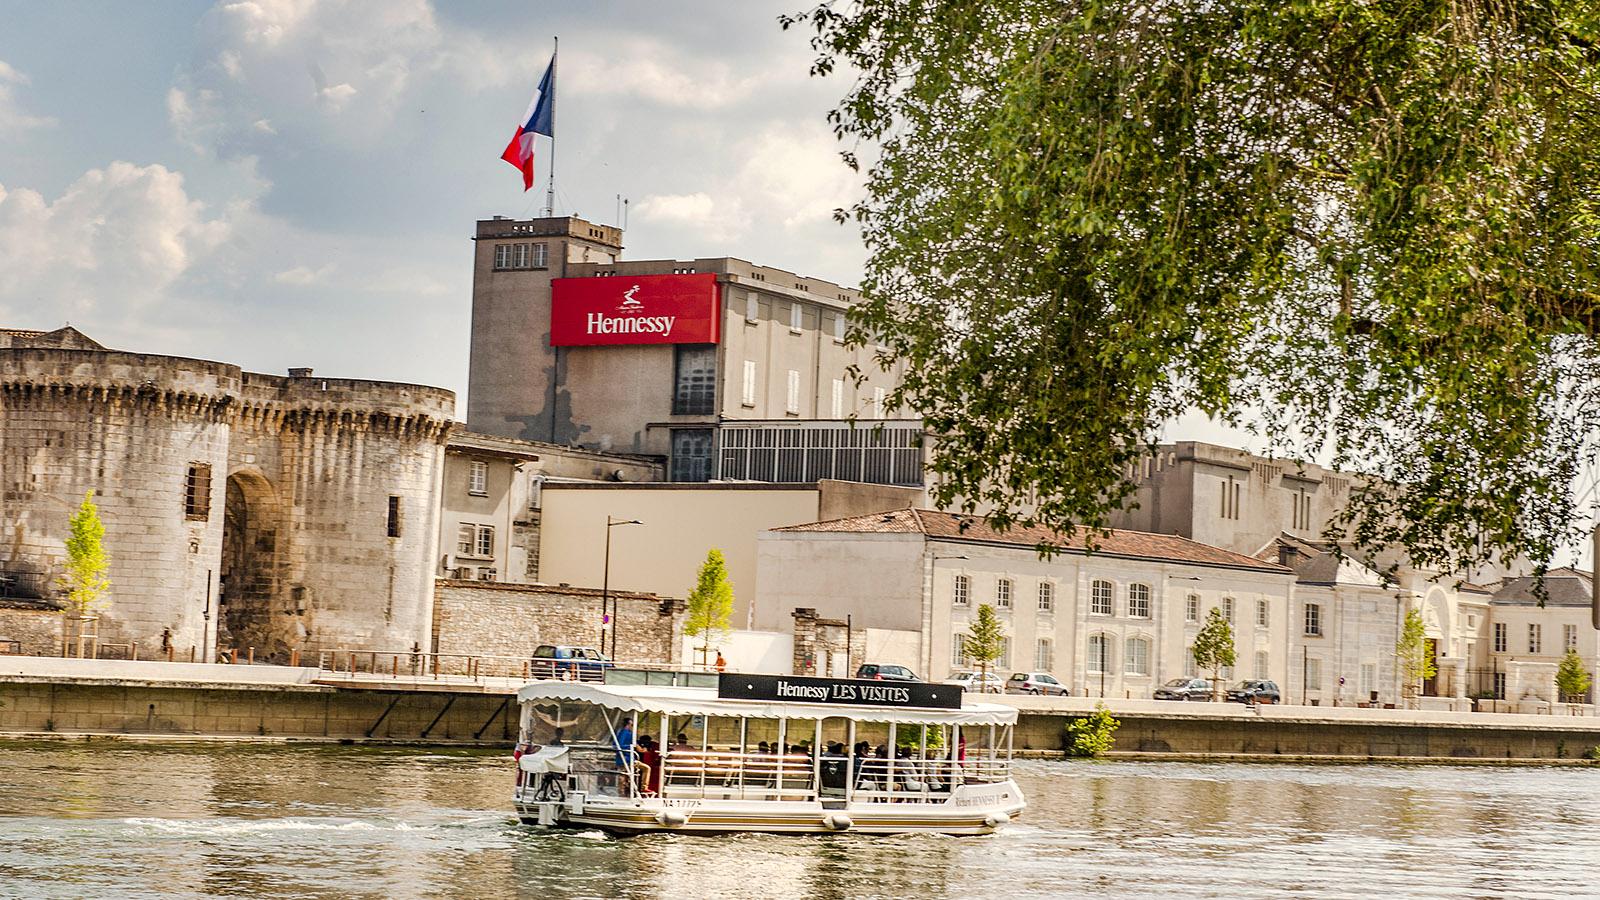 Der Cognacfabrikant Hessessy hat seinen Stammsitz direkt am Ufer der Charente. Foto: Hilke Maunder